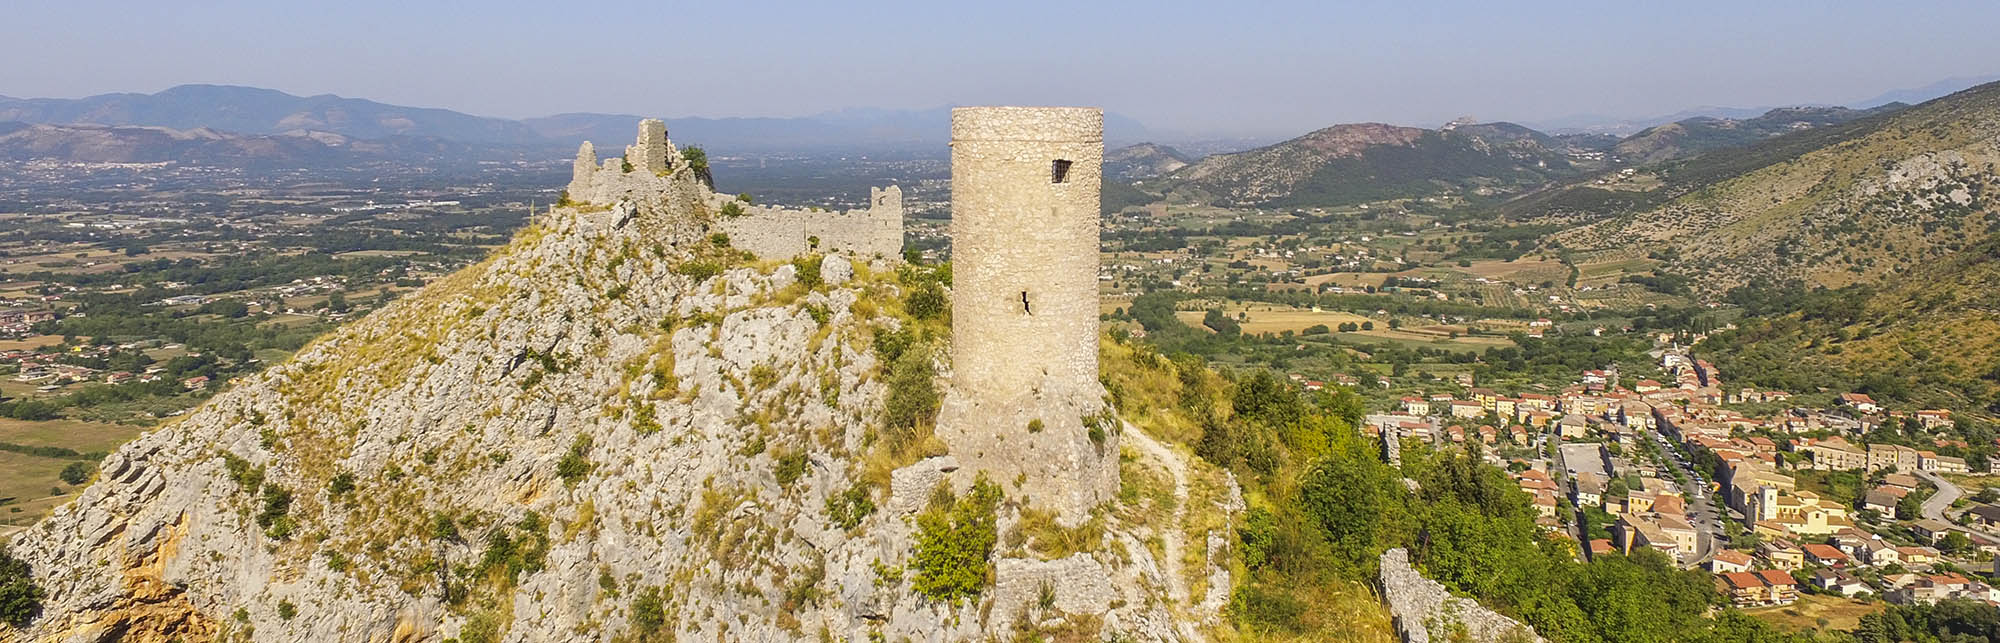 Castello dei Conti d’Aquino e Torre di Avvistamento detta "Del Cannone"